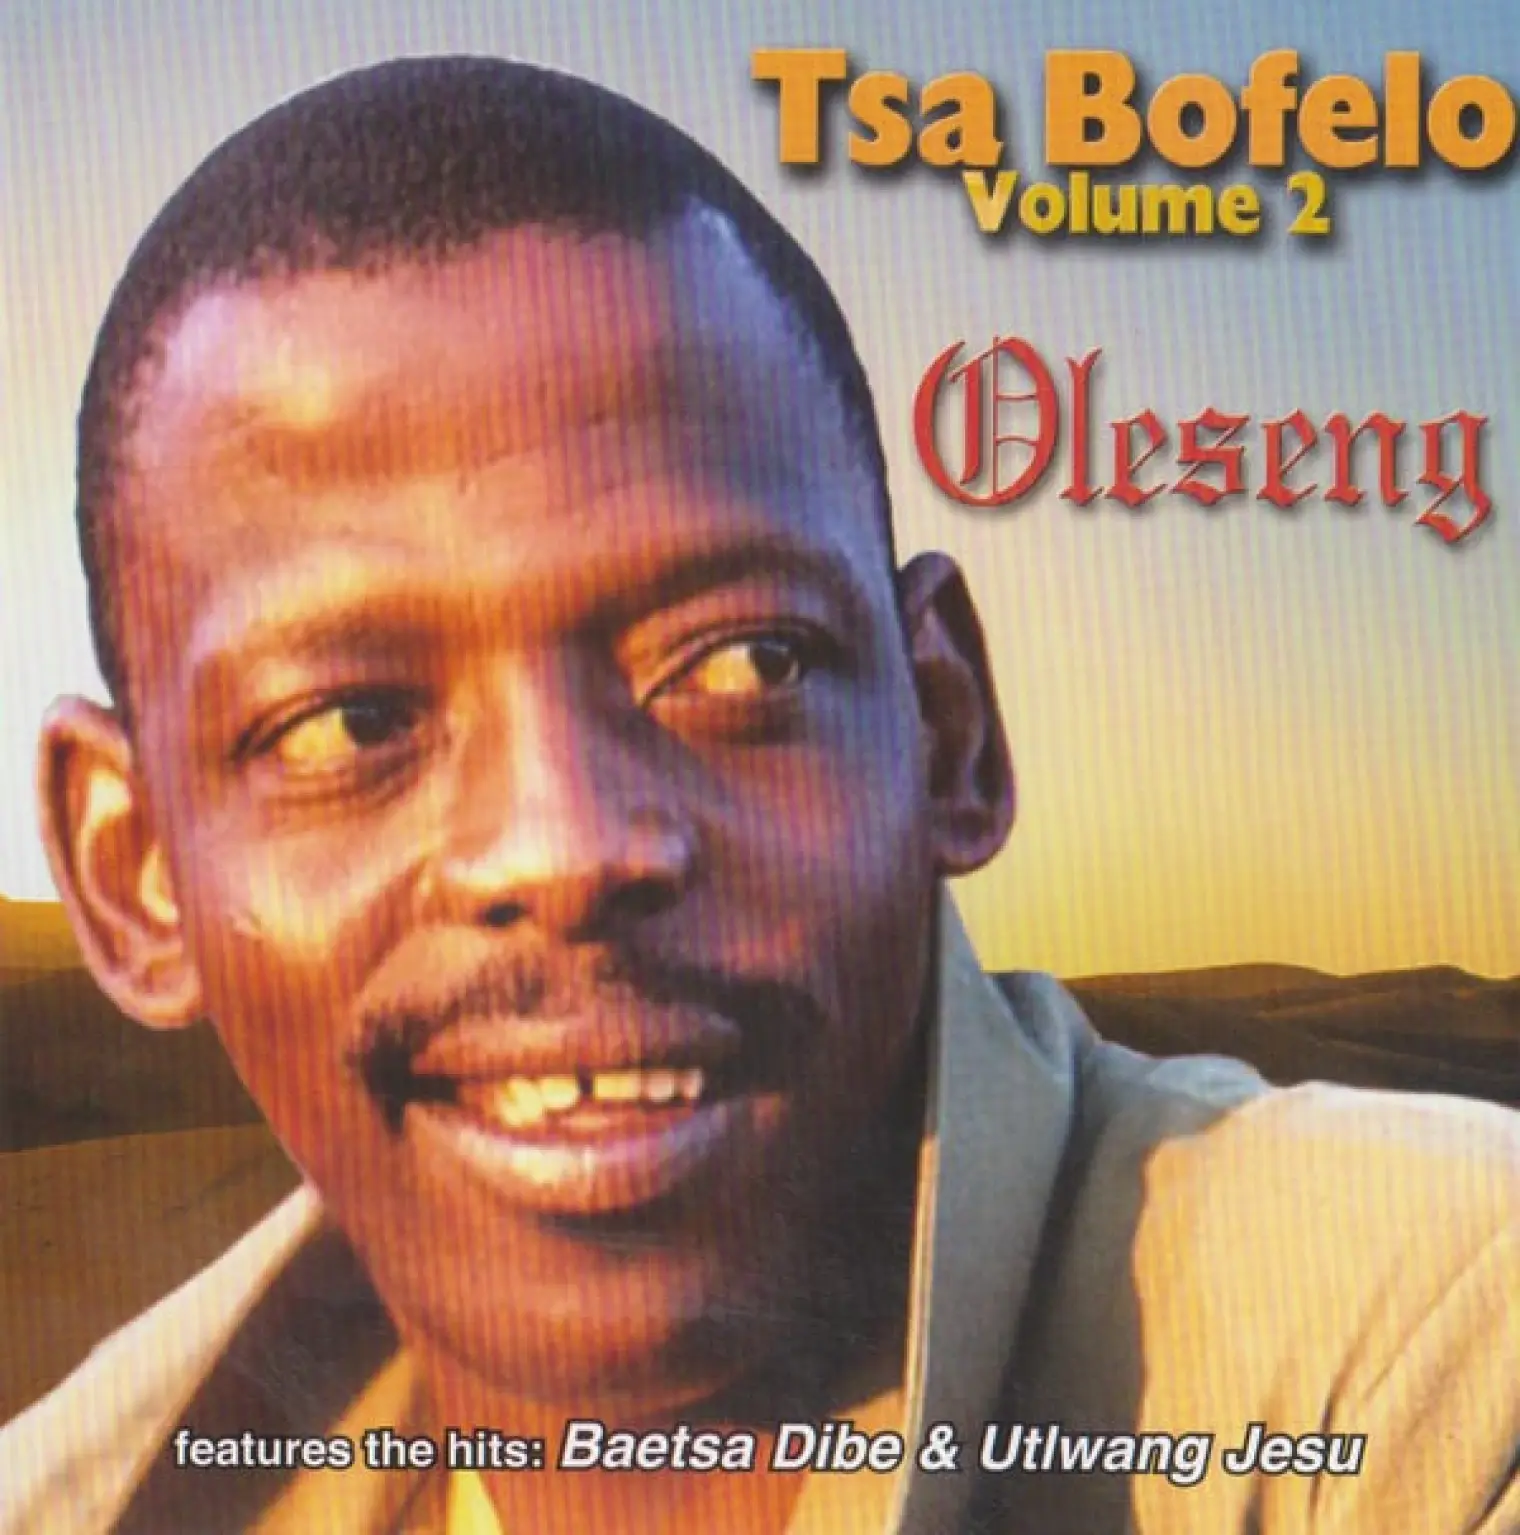 Tsa Bofelo Vol. 2 -  Oleseng 